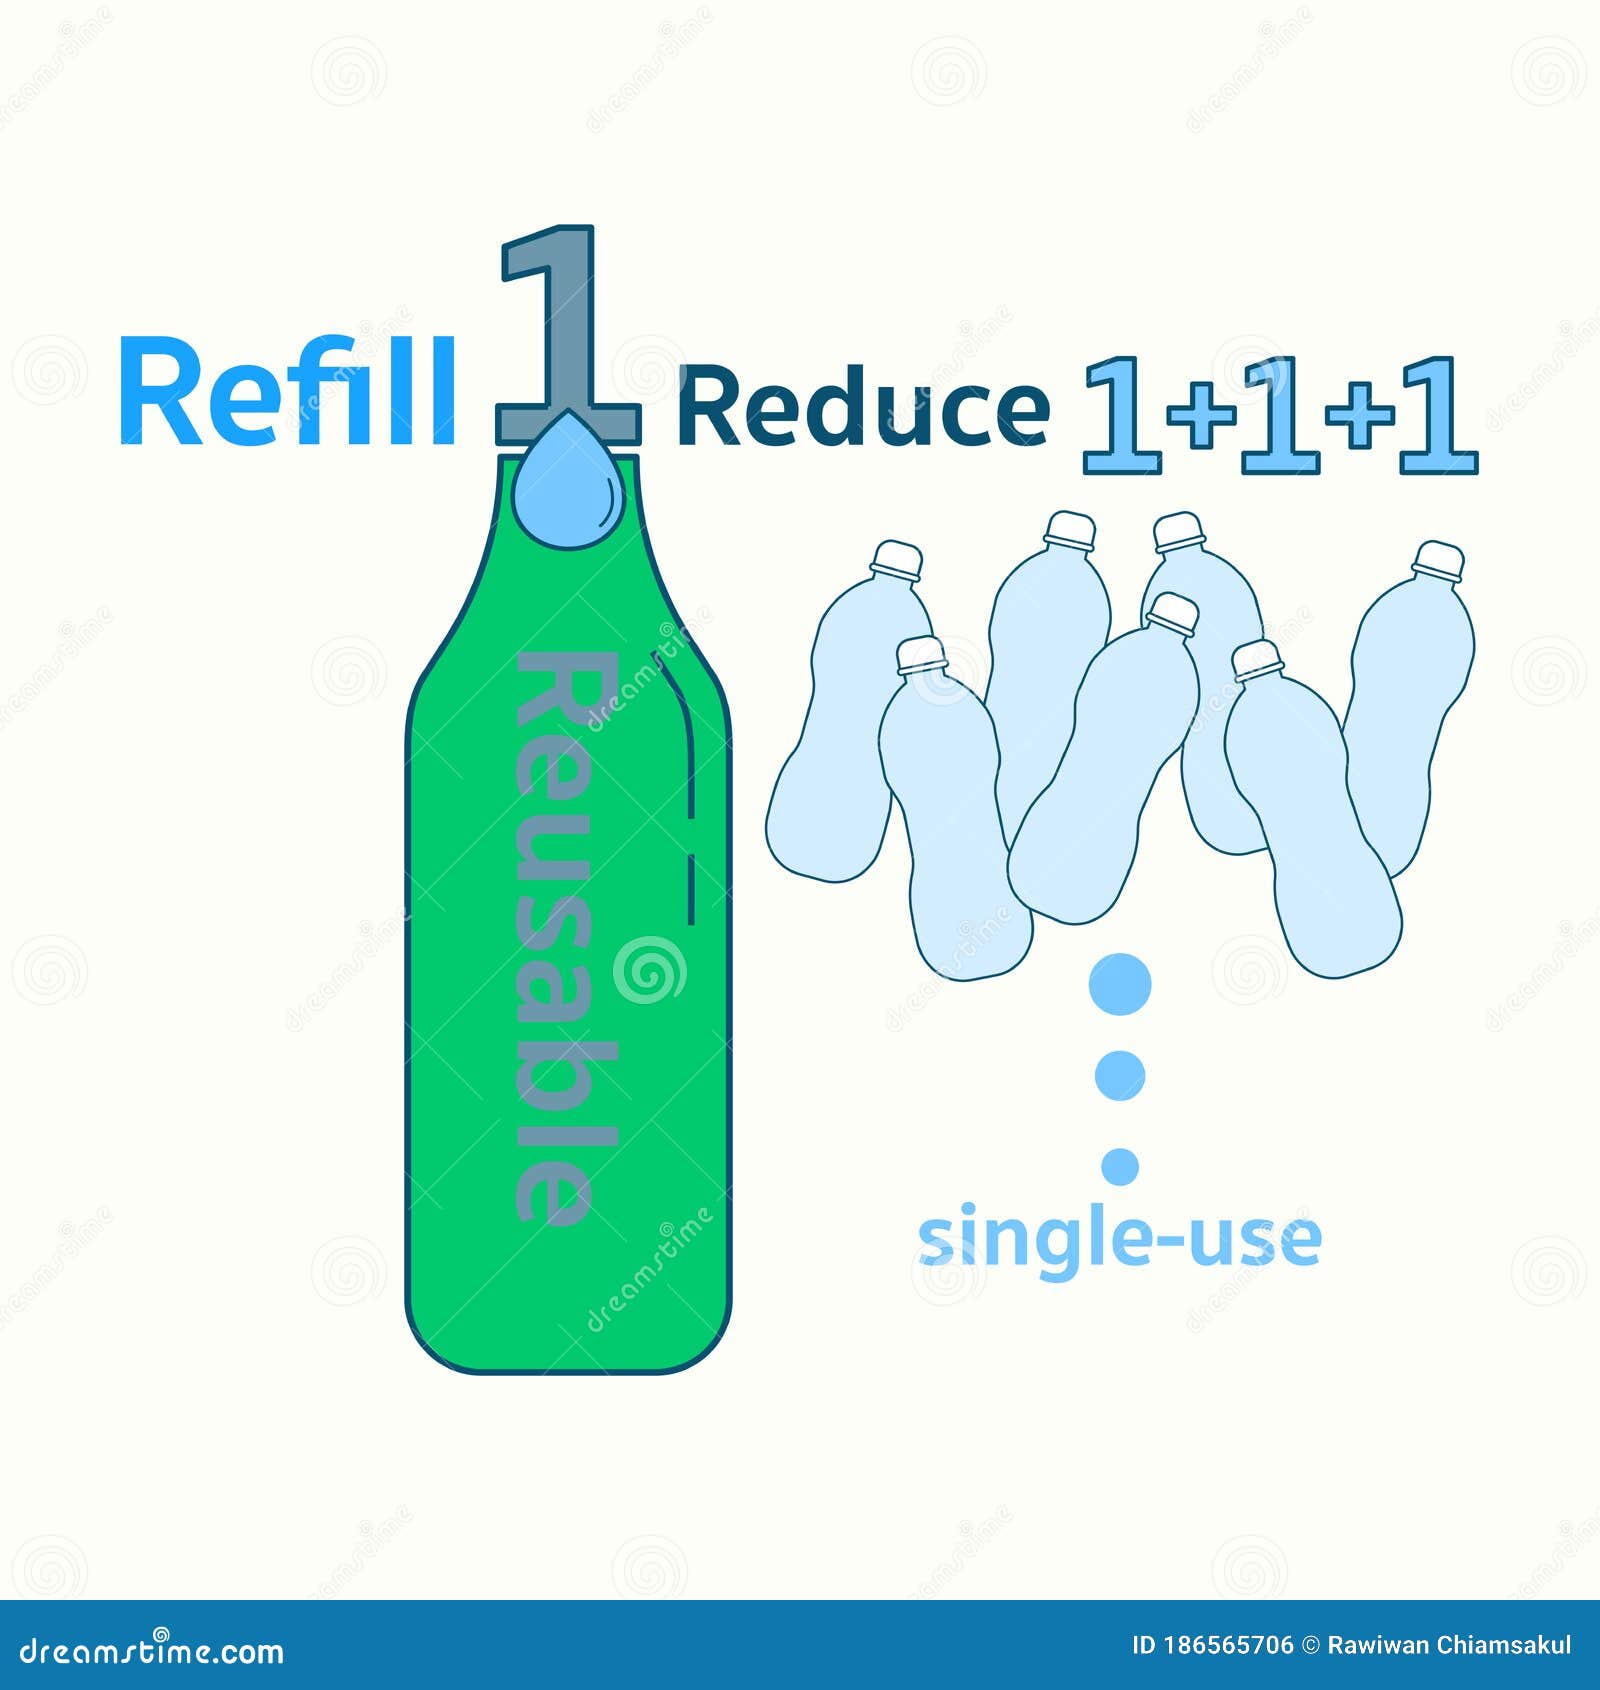 refill 1 reduce many